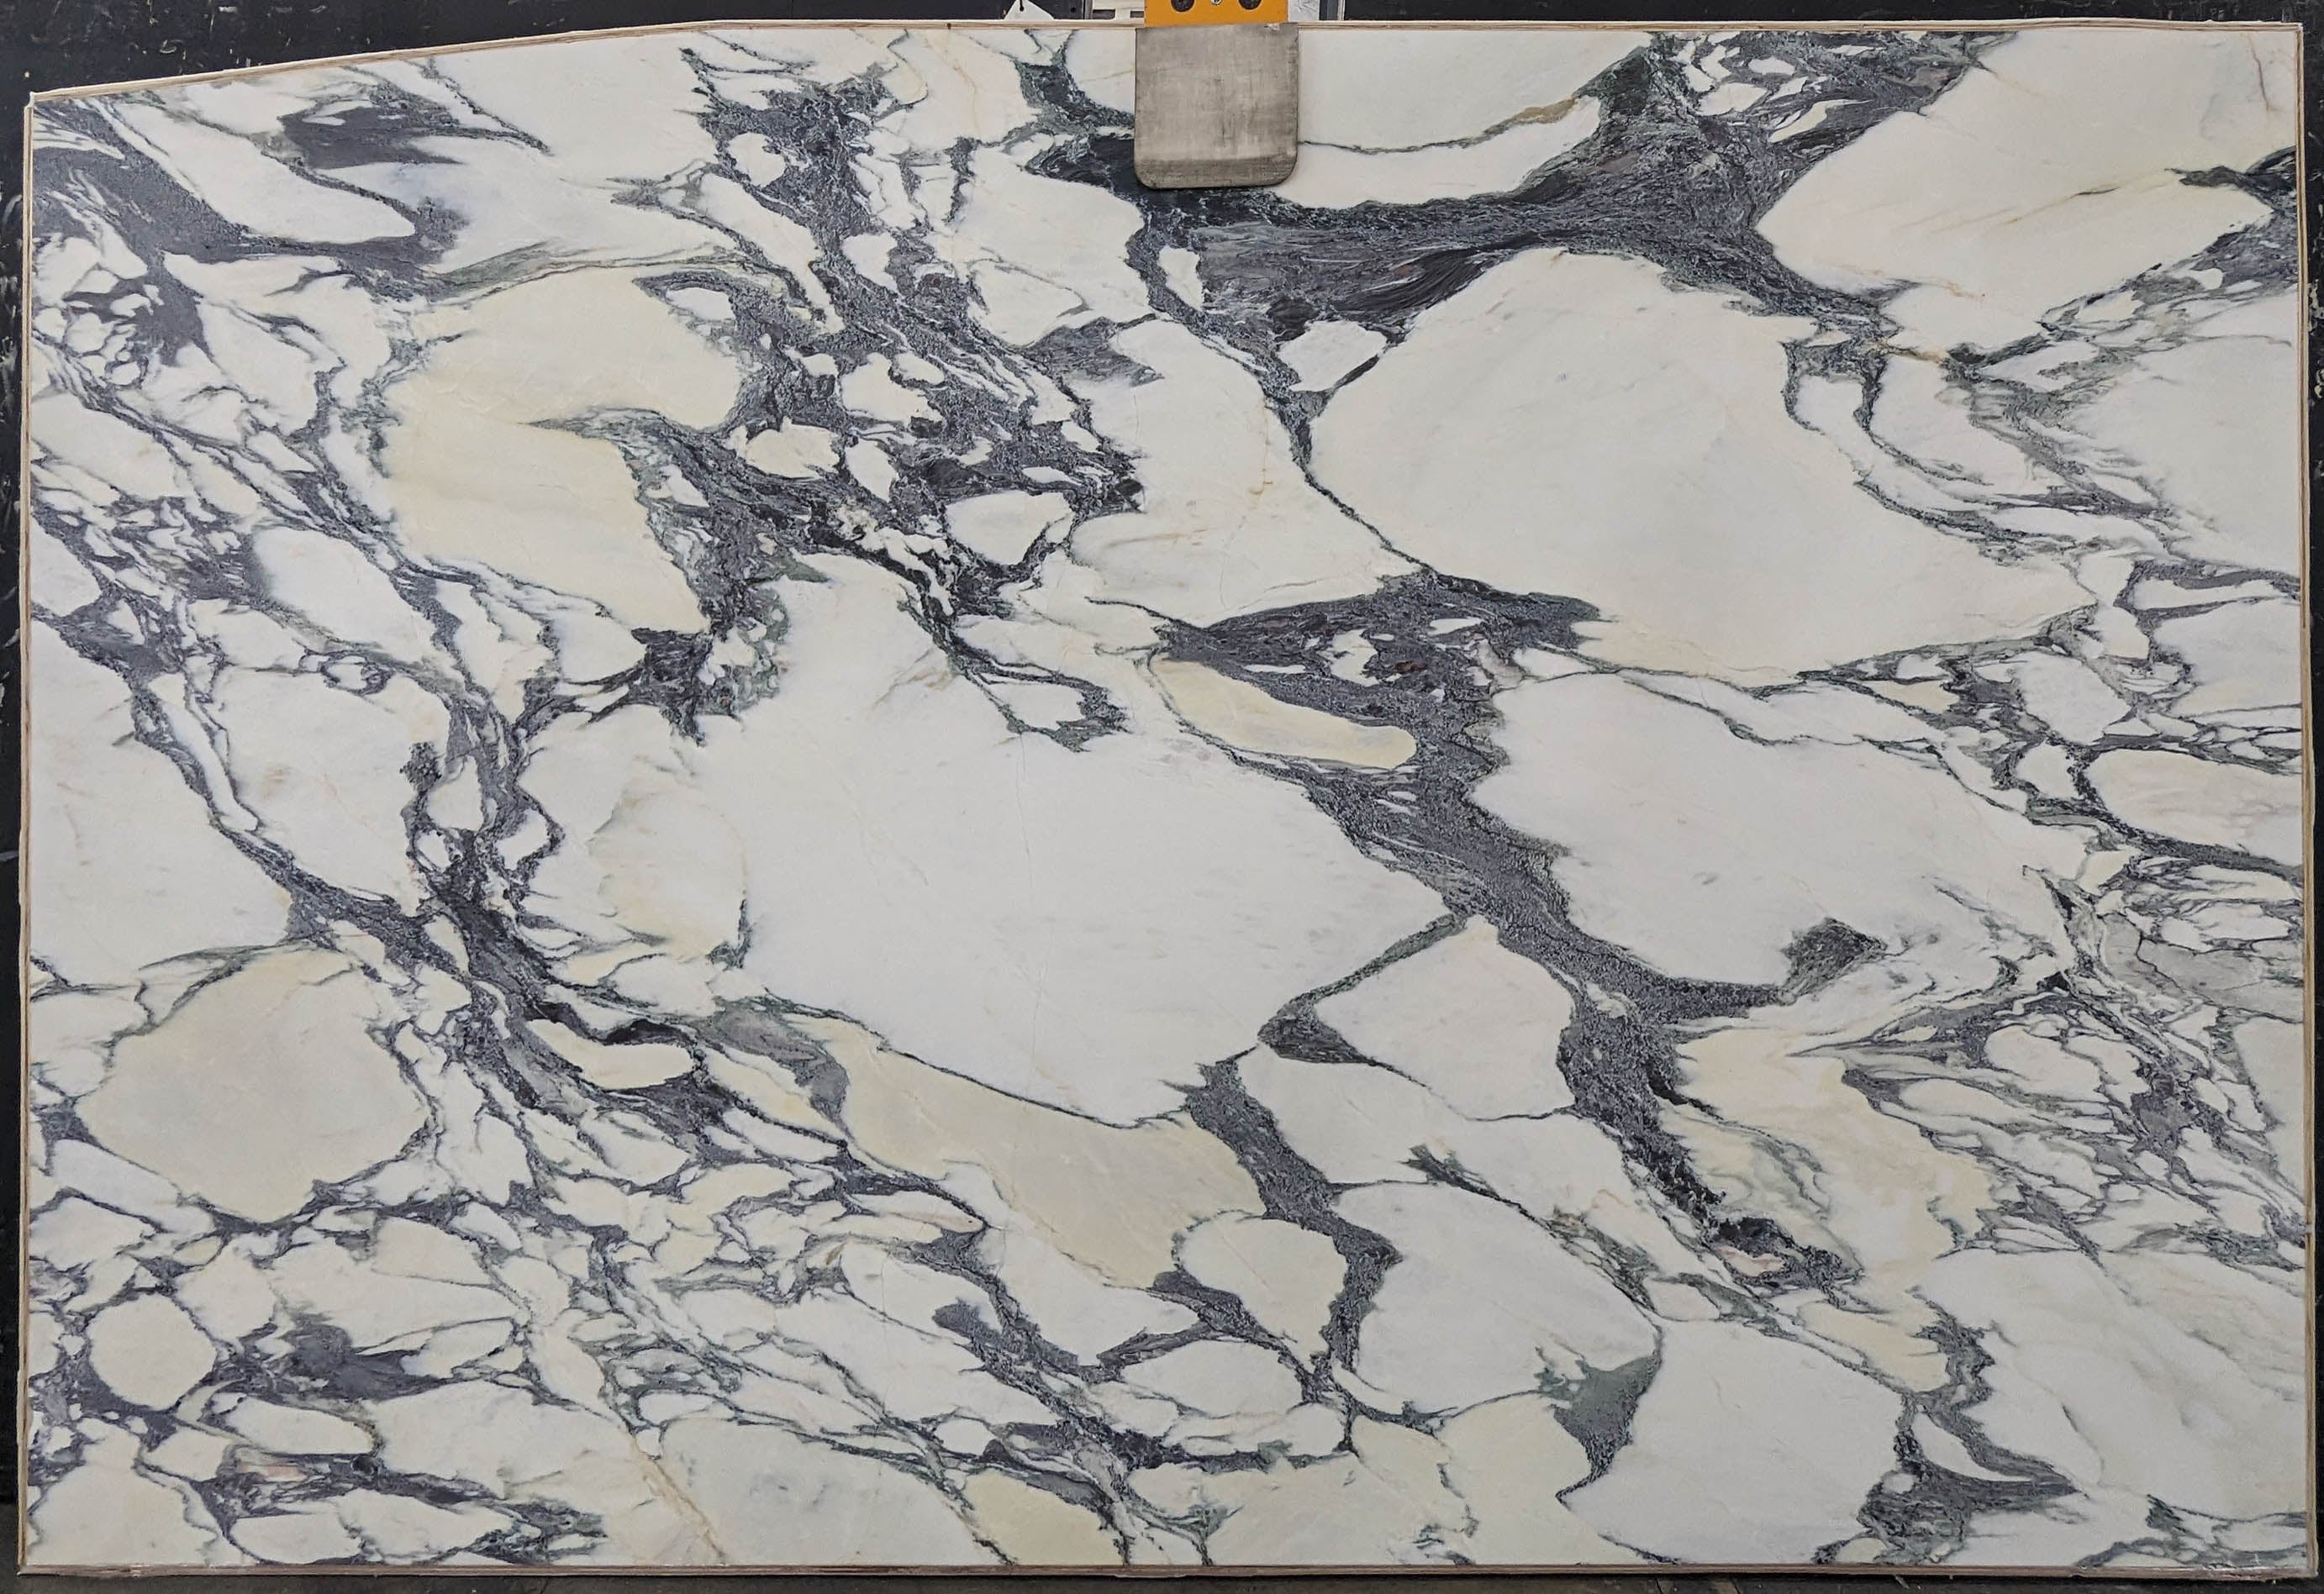  Calacatta Viola Marble Slab 3/4 - 13737A#60 -  74x116 